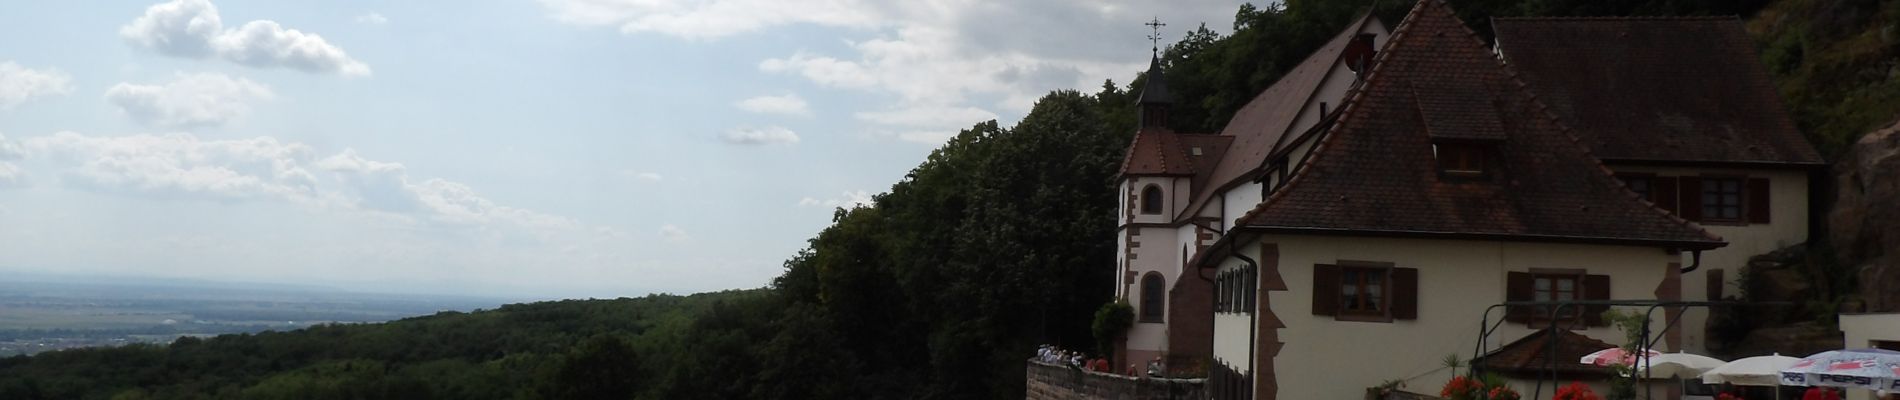 Randonnée Marche Osenbach - osenbach-schauenberg - Photo